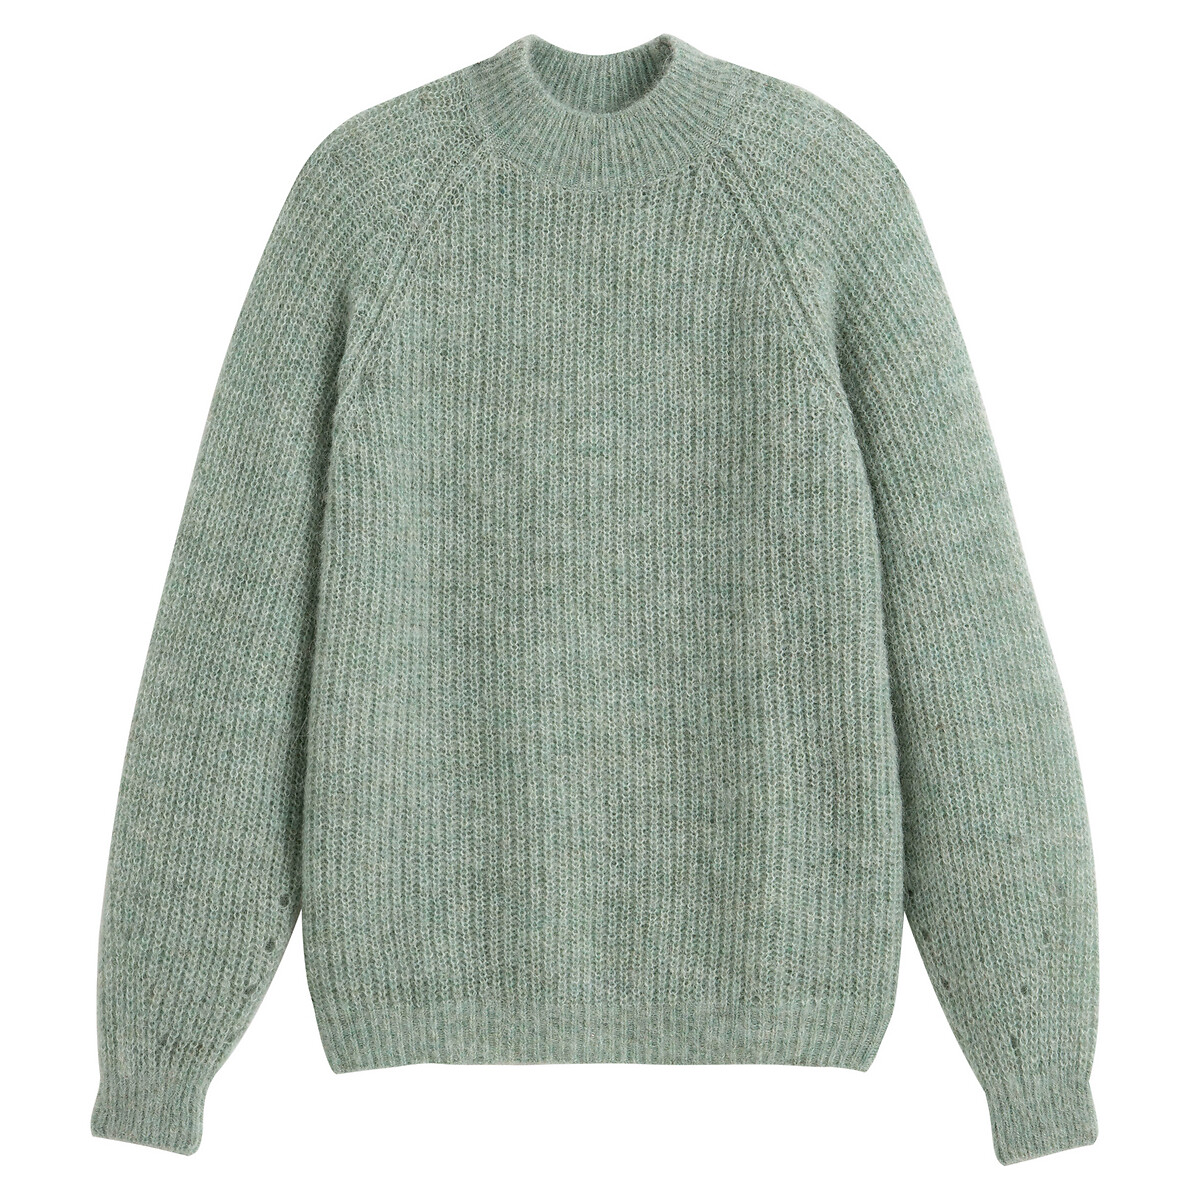 Пуловер La Redoute С воротником-стойкой из альпаки XL зеленый, размер XL - фото 5